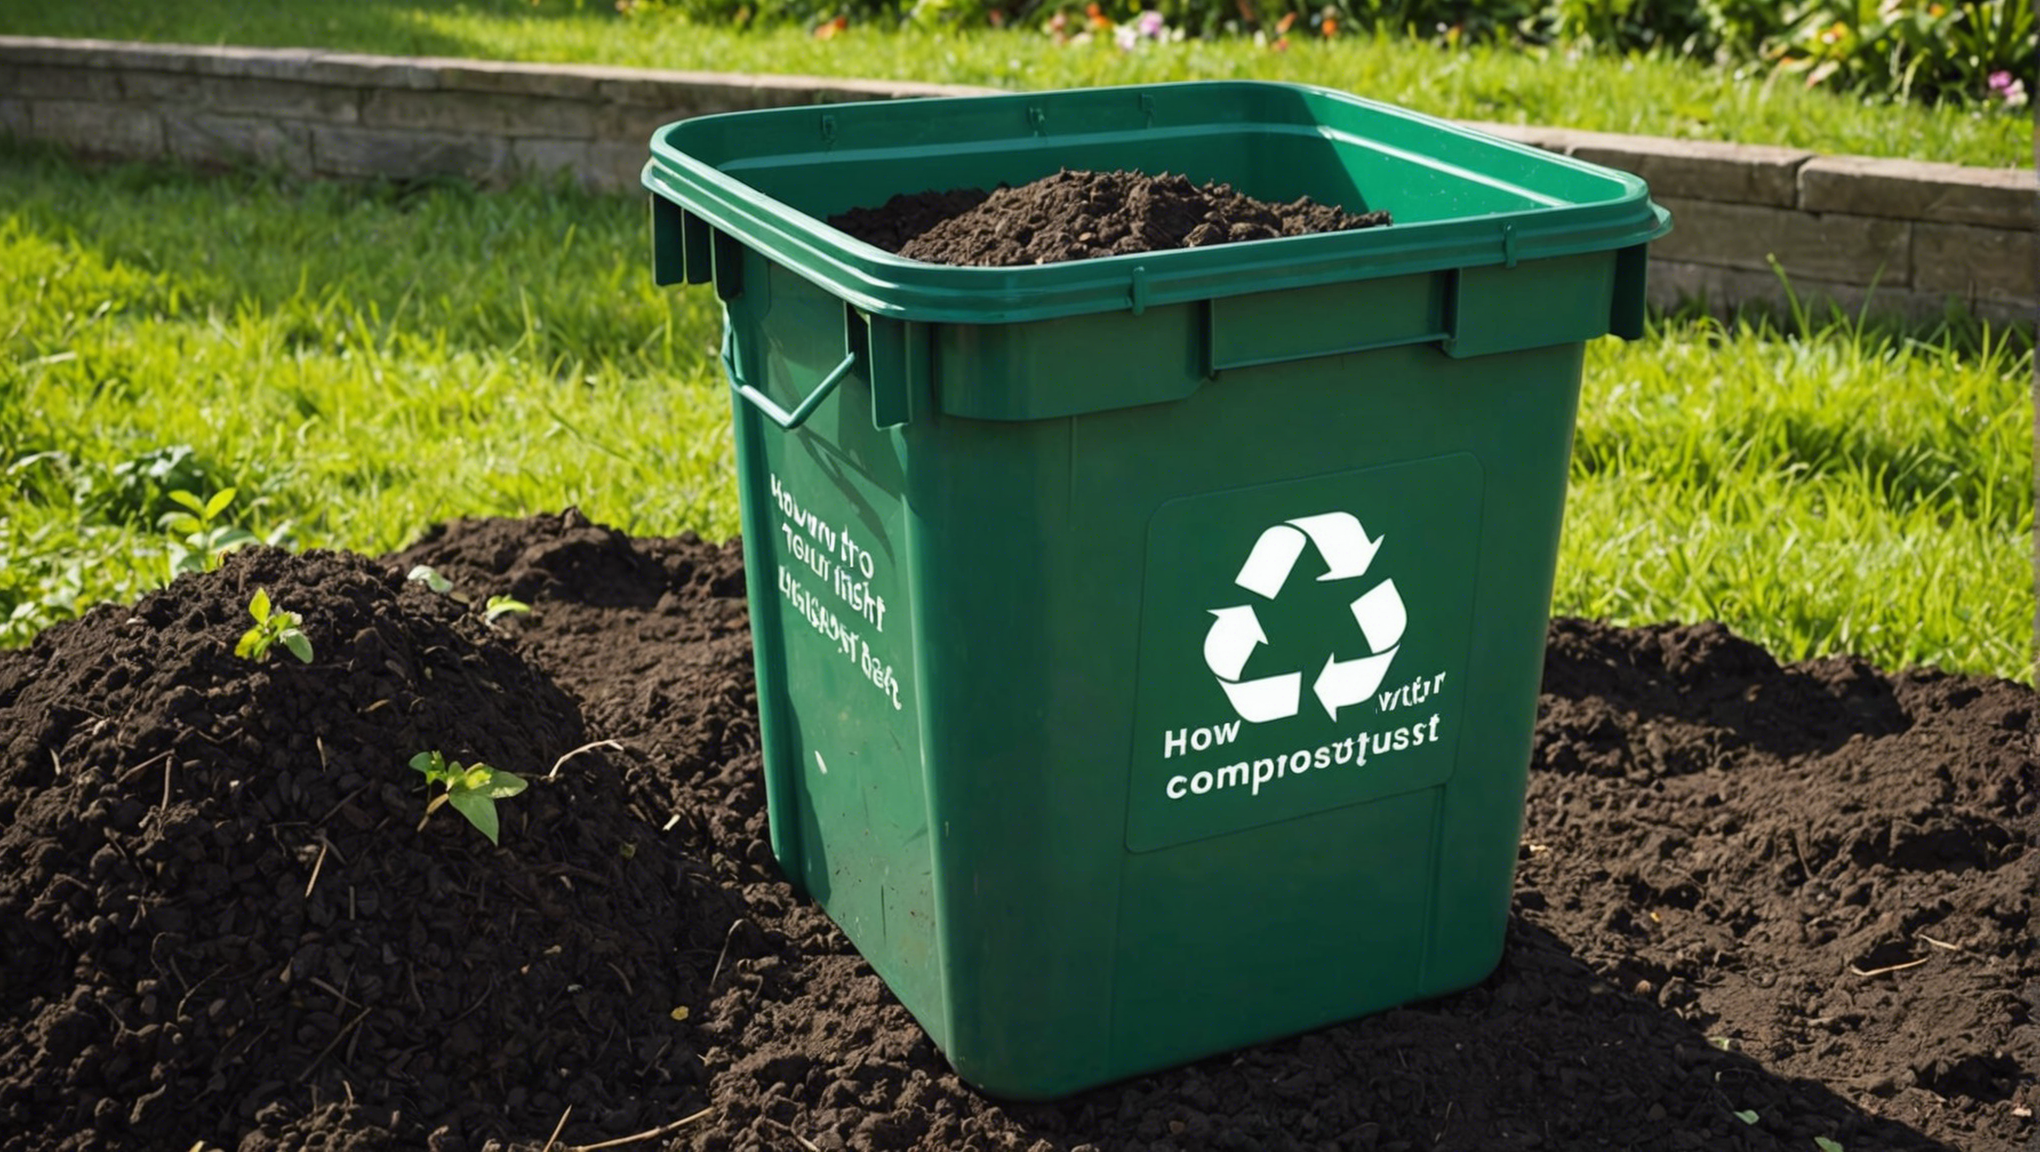 découvrez comment transformer facilement vos déchets en compost de qualité avec un sac de compostage. réduisez votre empreinte écologique et enrichissez votre jardin grâce à une méthode simple et efficace.